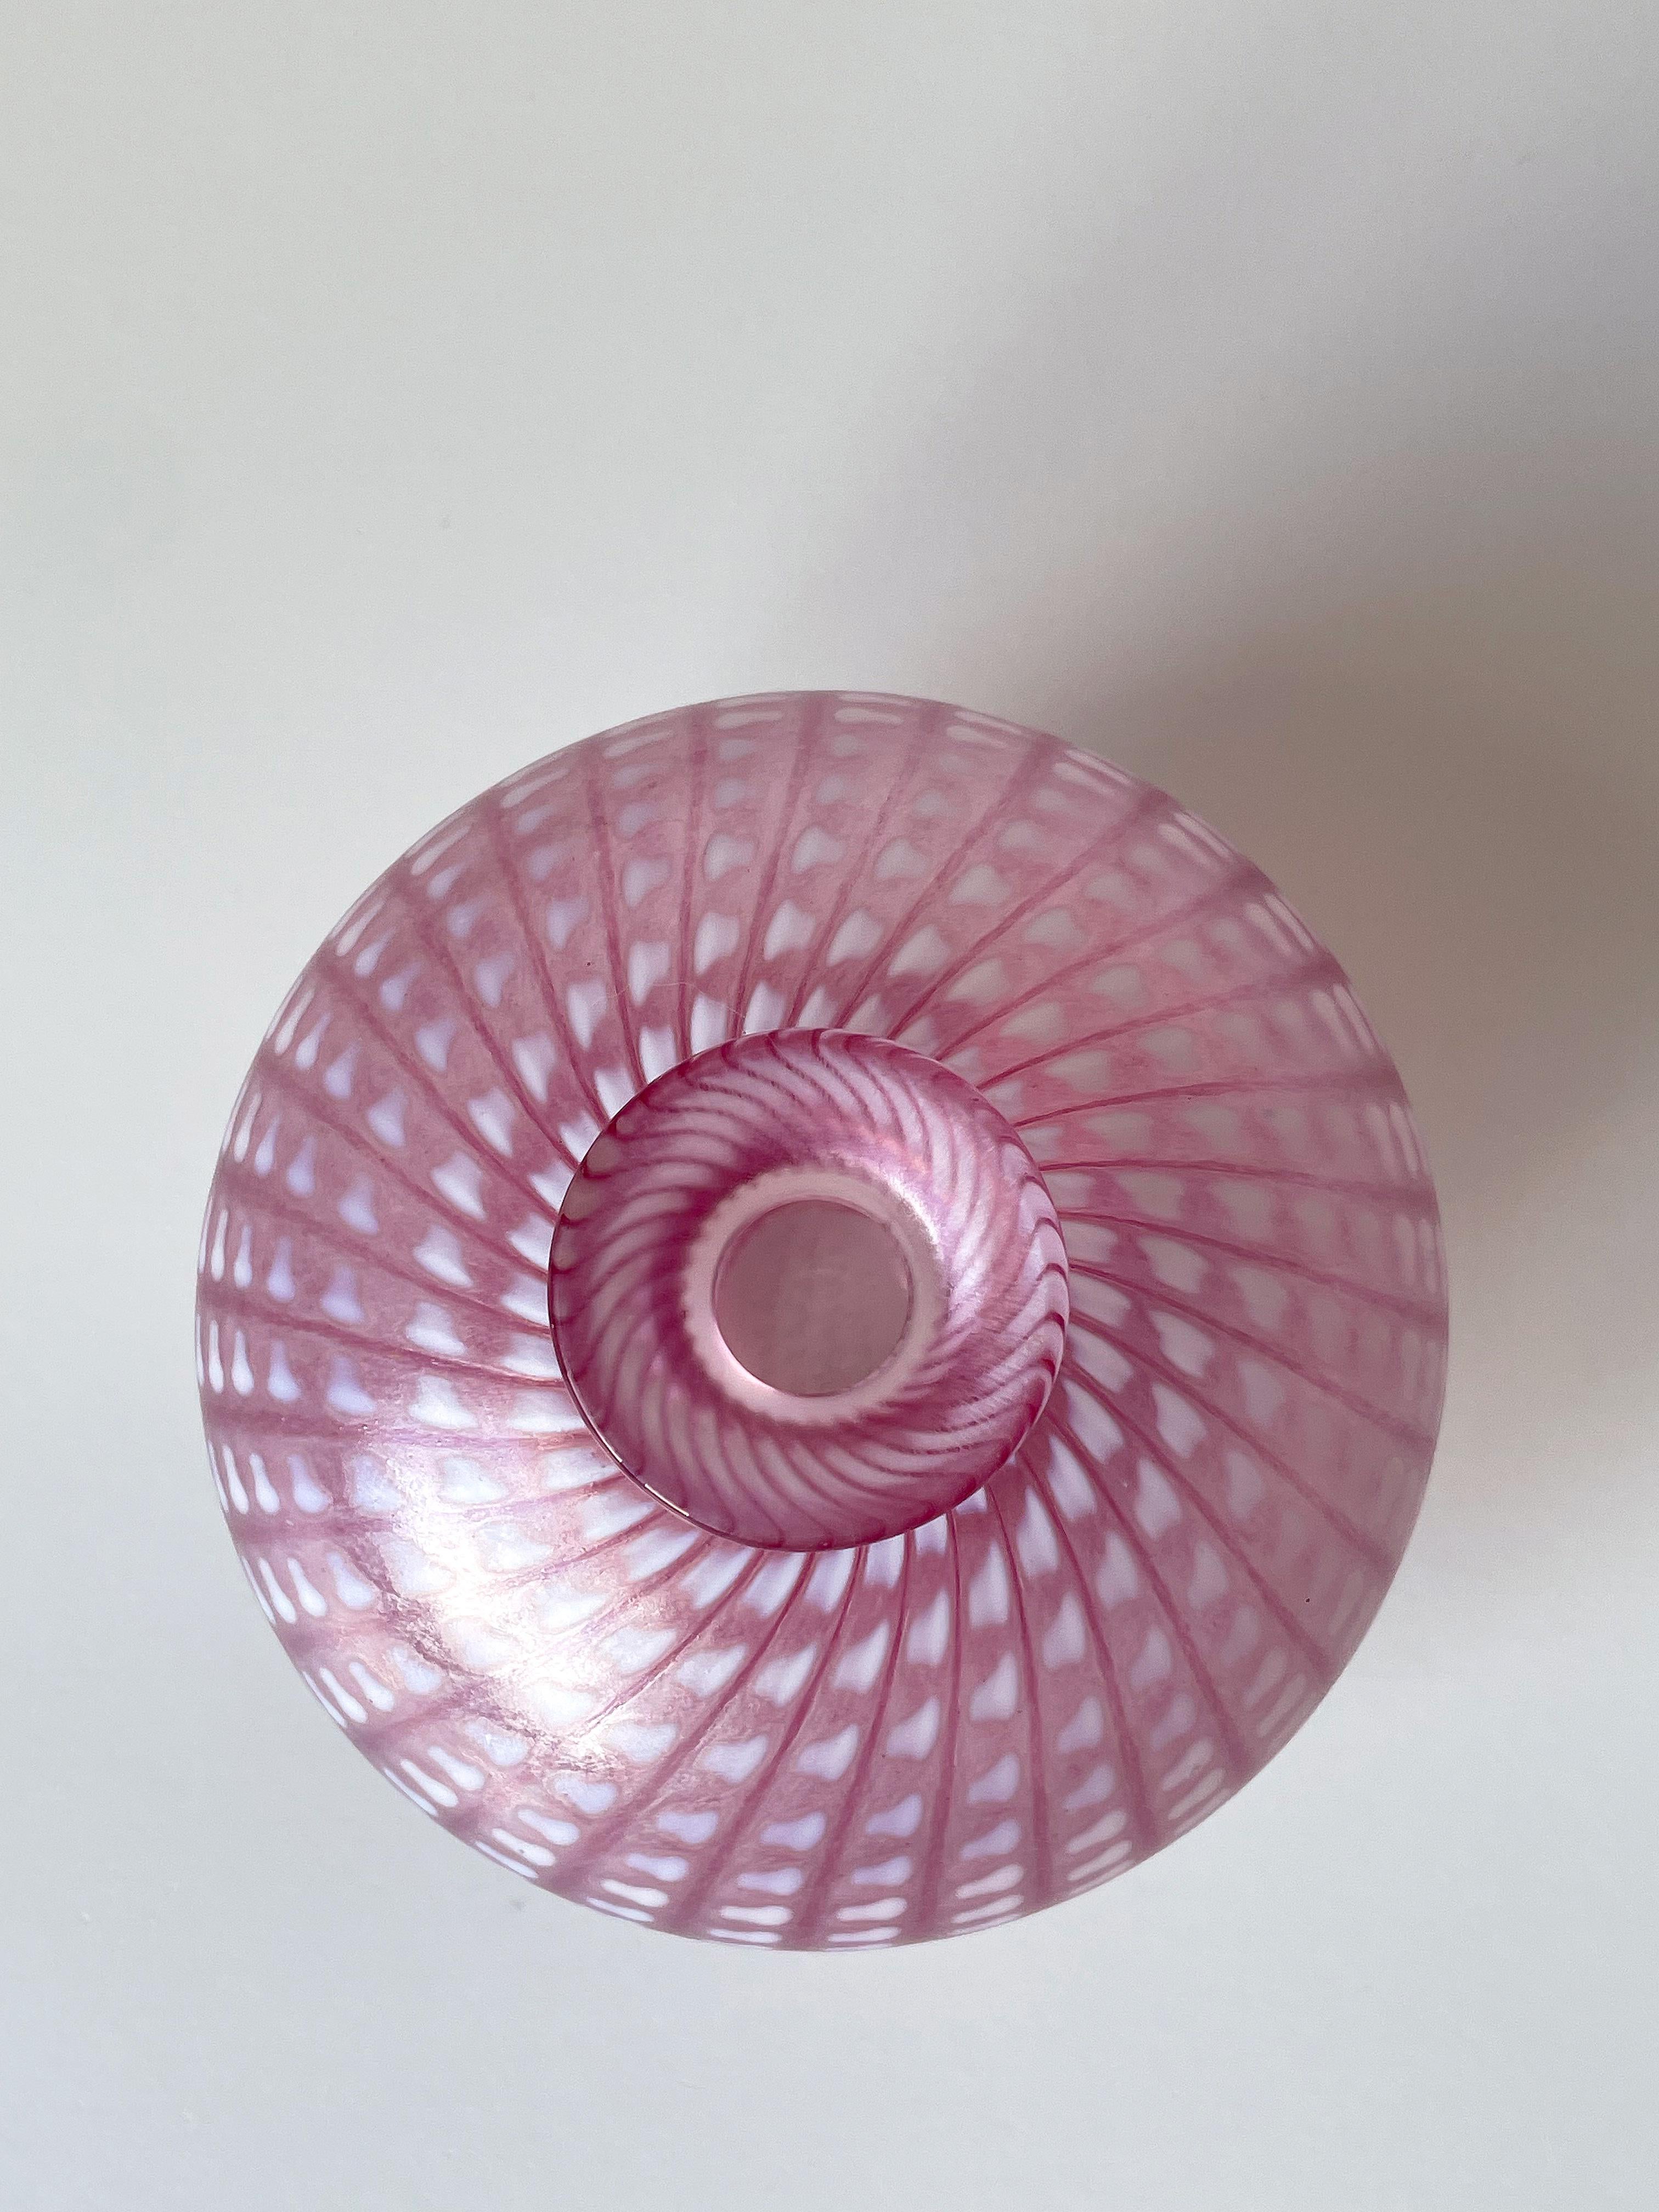 Swedish Vallien Kosta Boda Pink White Minos Art Glass Vase, 1984 For Sale